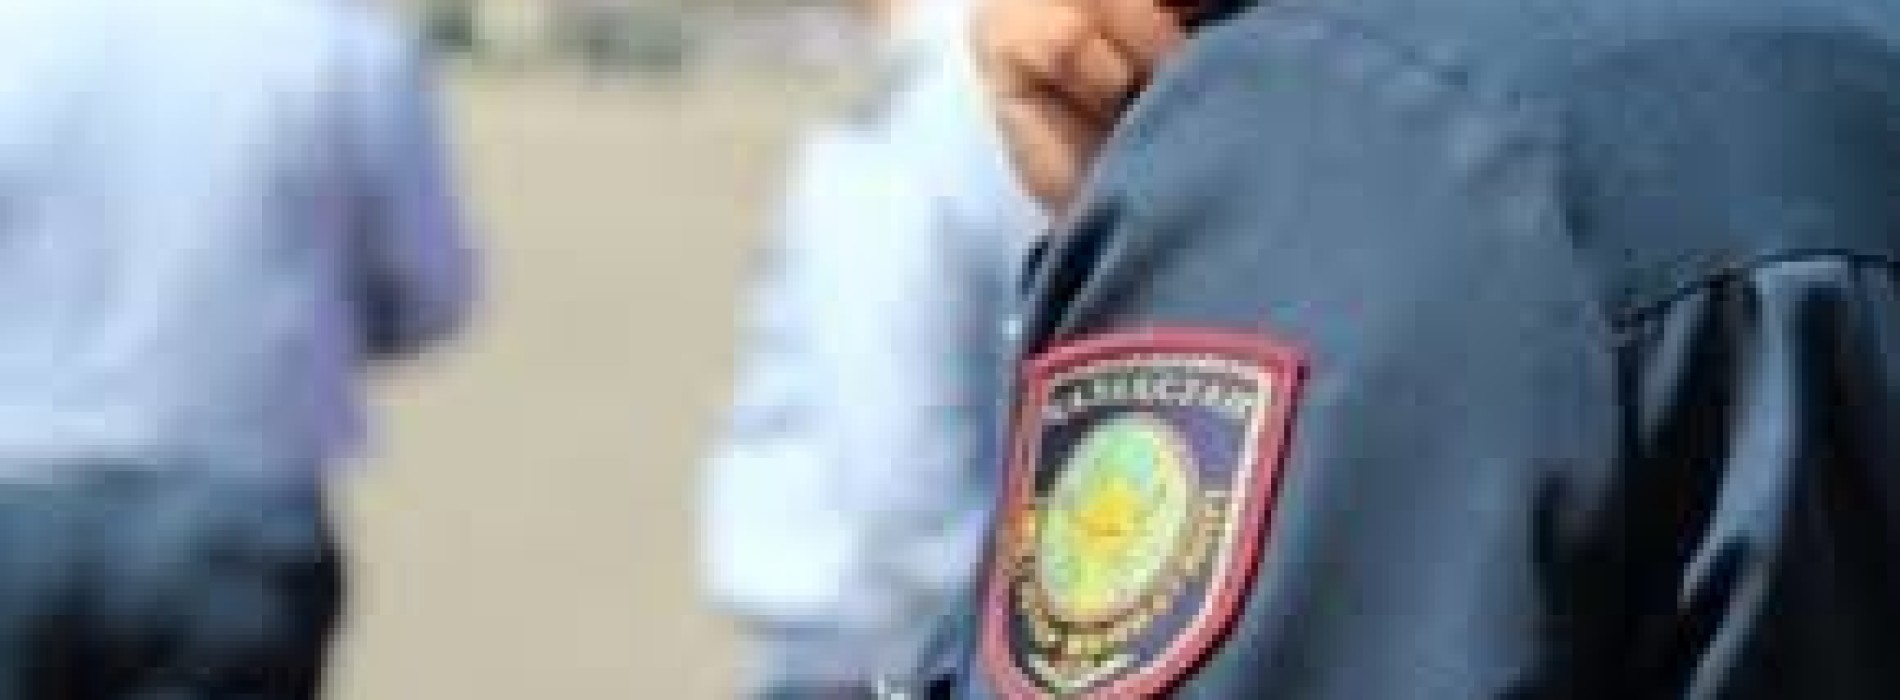 Свыше 100 полицейских привлечено к дисциплинарной ответственности в Акмолинской области